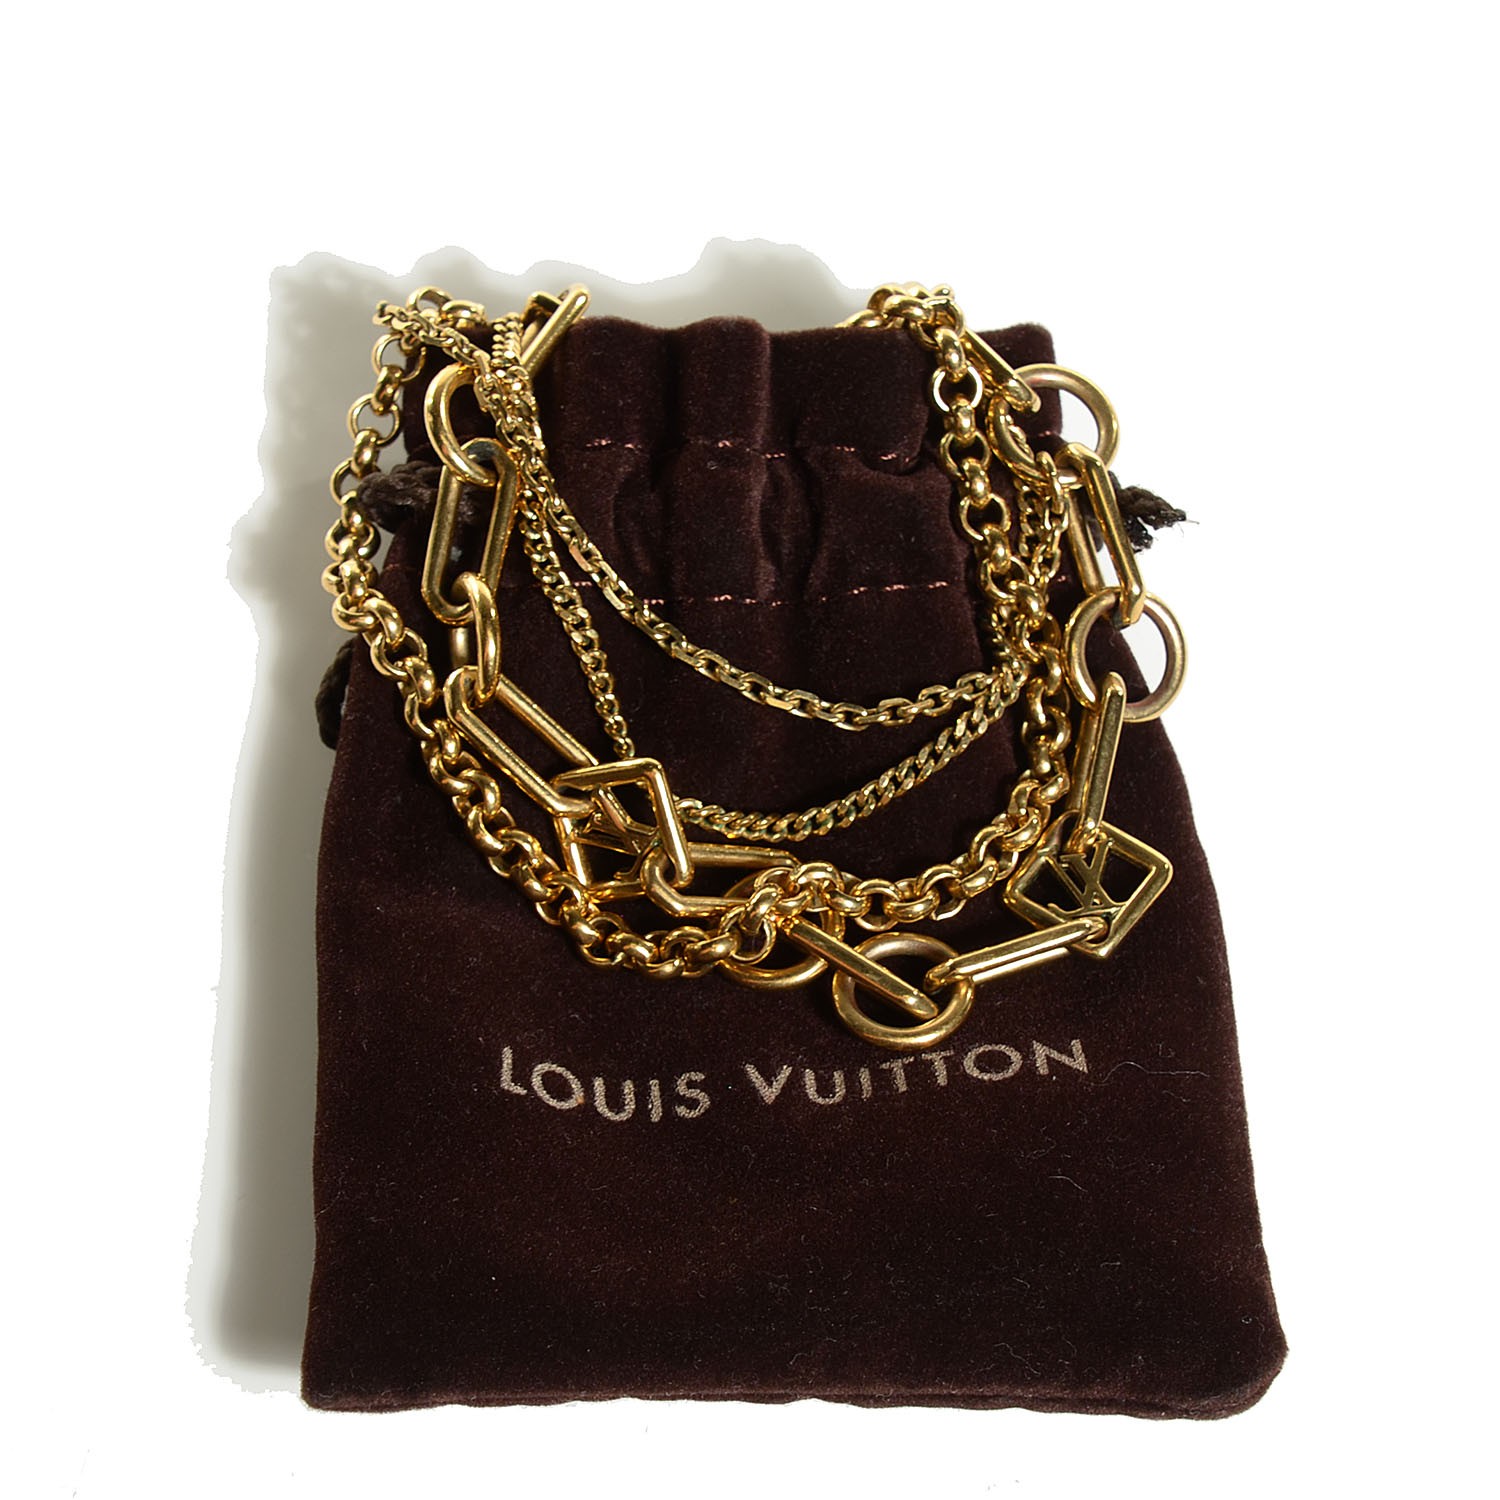 LOUIS VUITTON Collier Vegas Chain Necklace Gold 131963